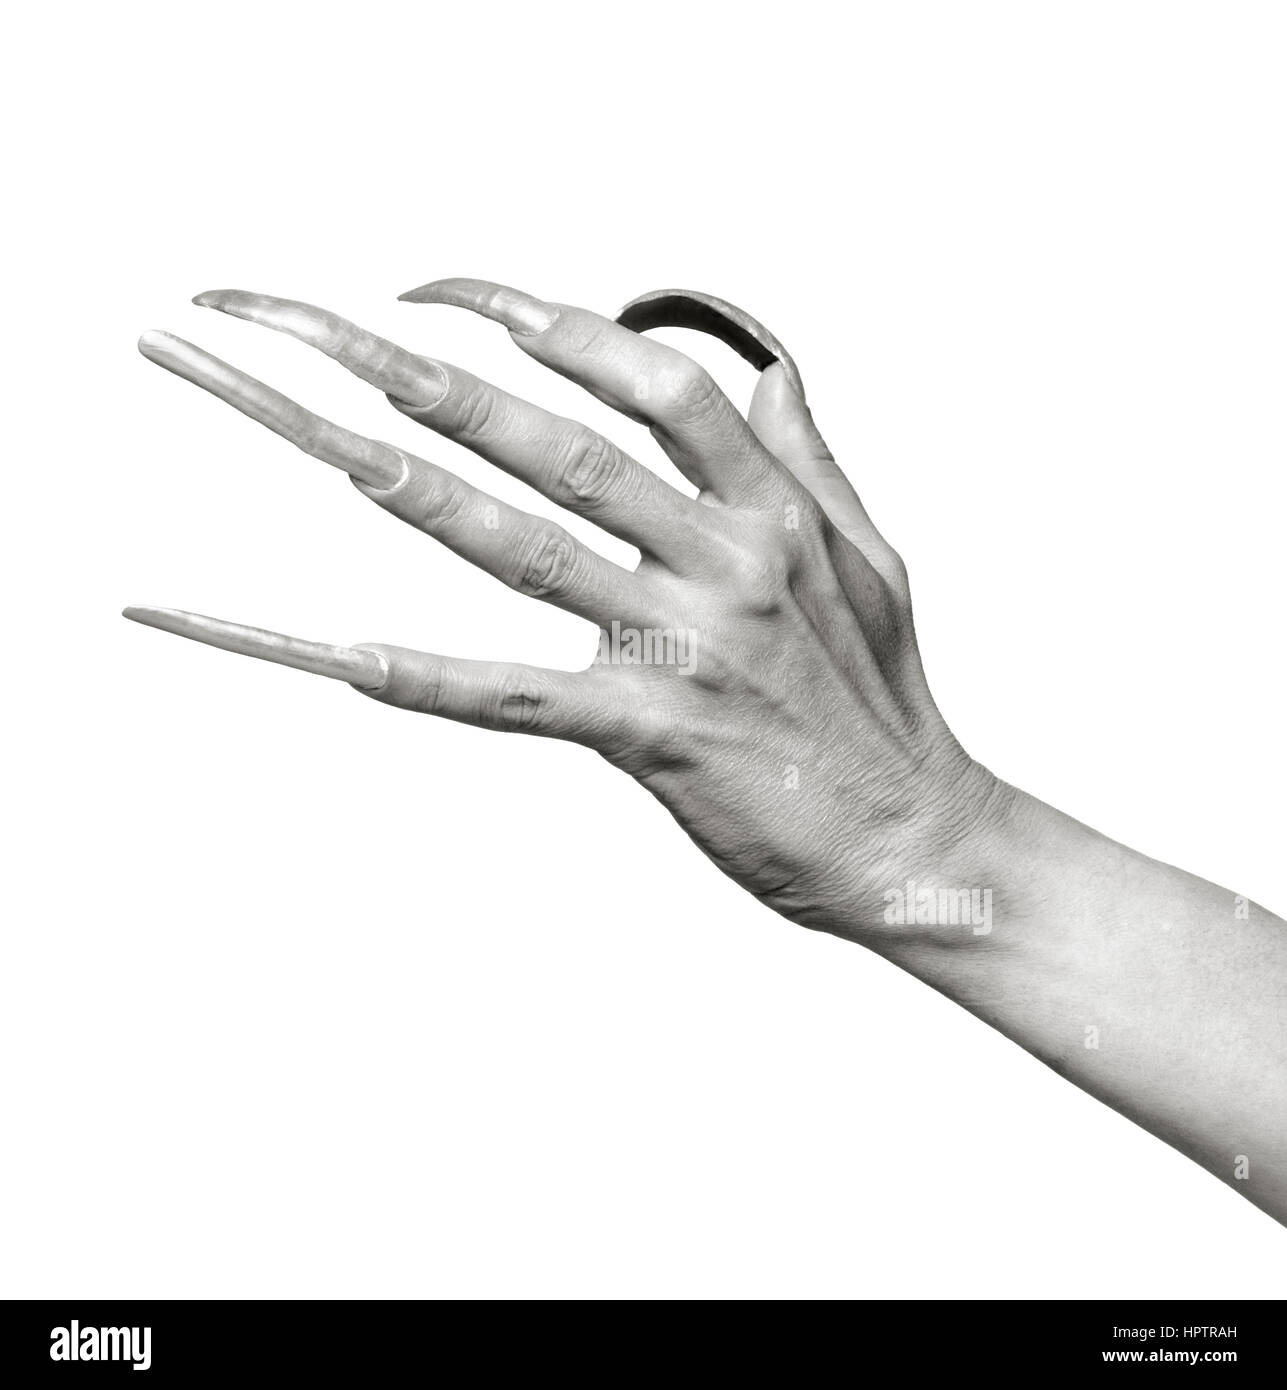 Le moyen format argentique shot. Portrait noir et blanc d'une main d'homme avec une extrême longs ongles contre l'arrière-plan blanc. Banque D'Images